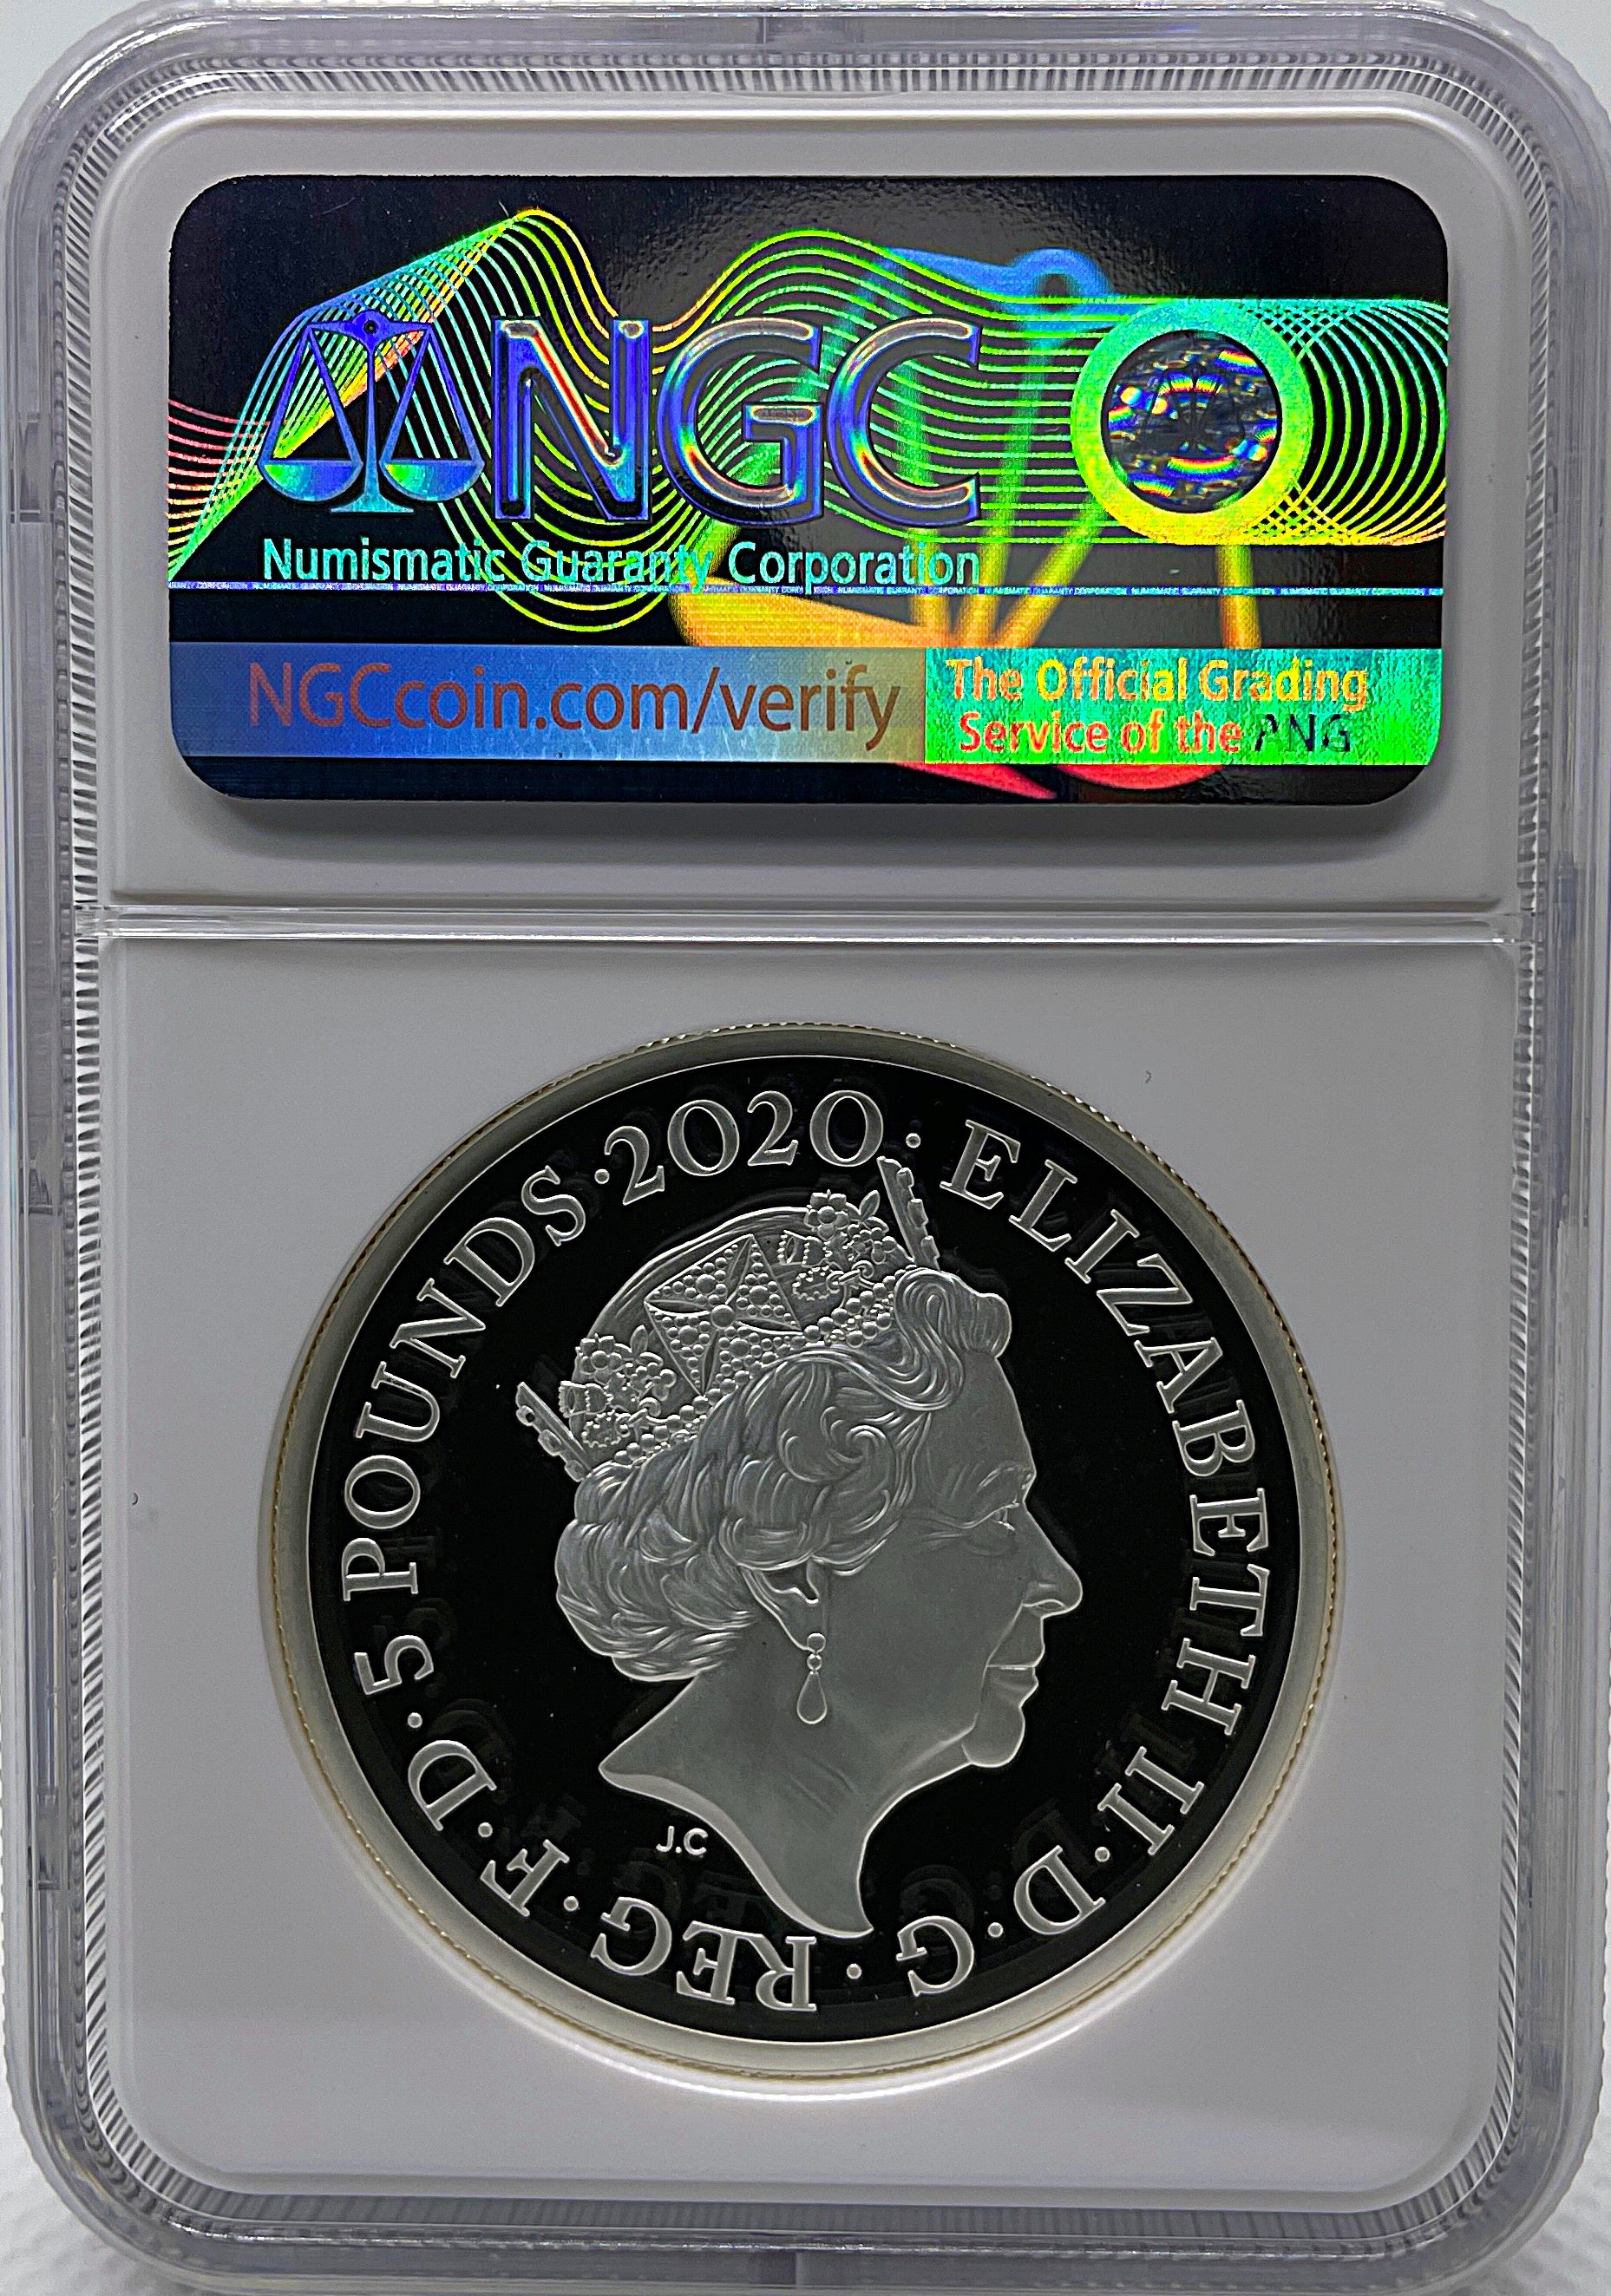 2020 イギリス ブリタニア 1オンス 2ポンド 銀貨 NGC PF70 UC